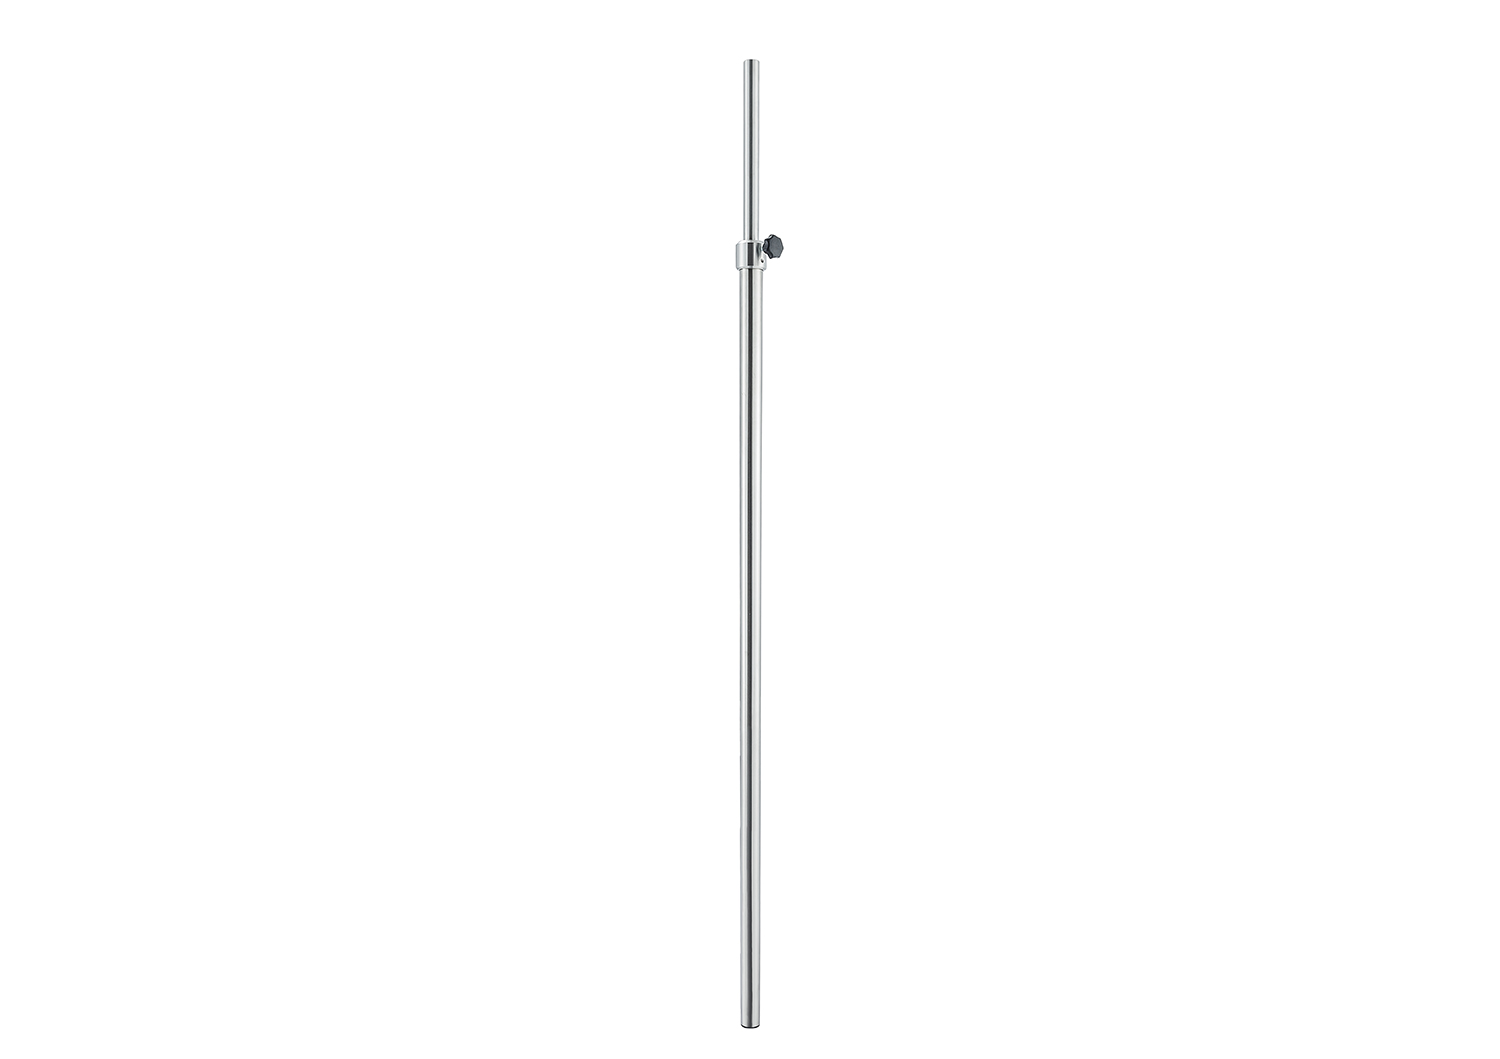 Adjustable pole